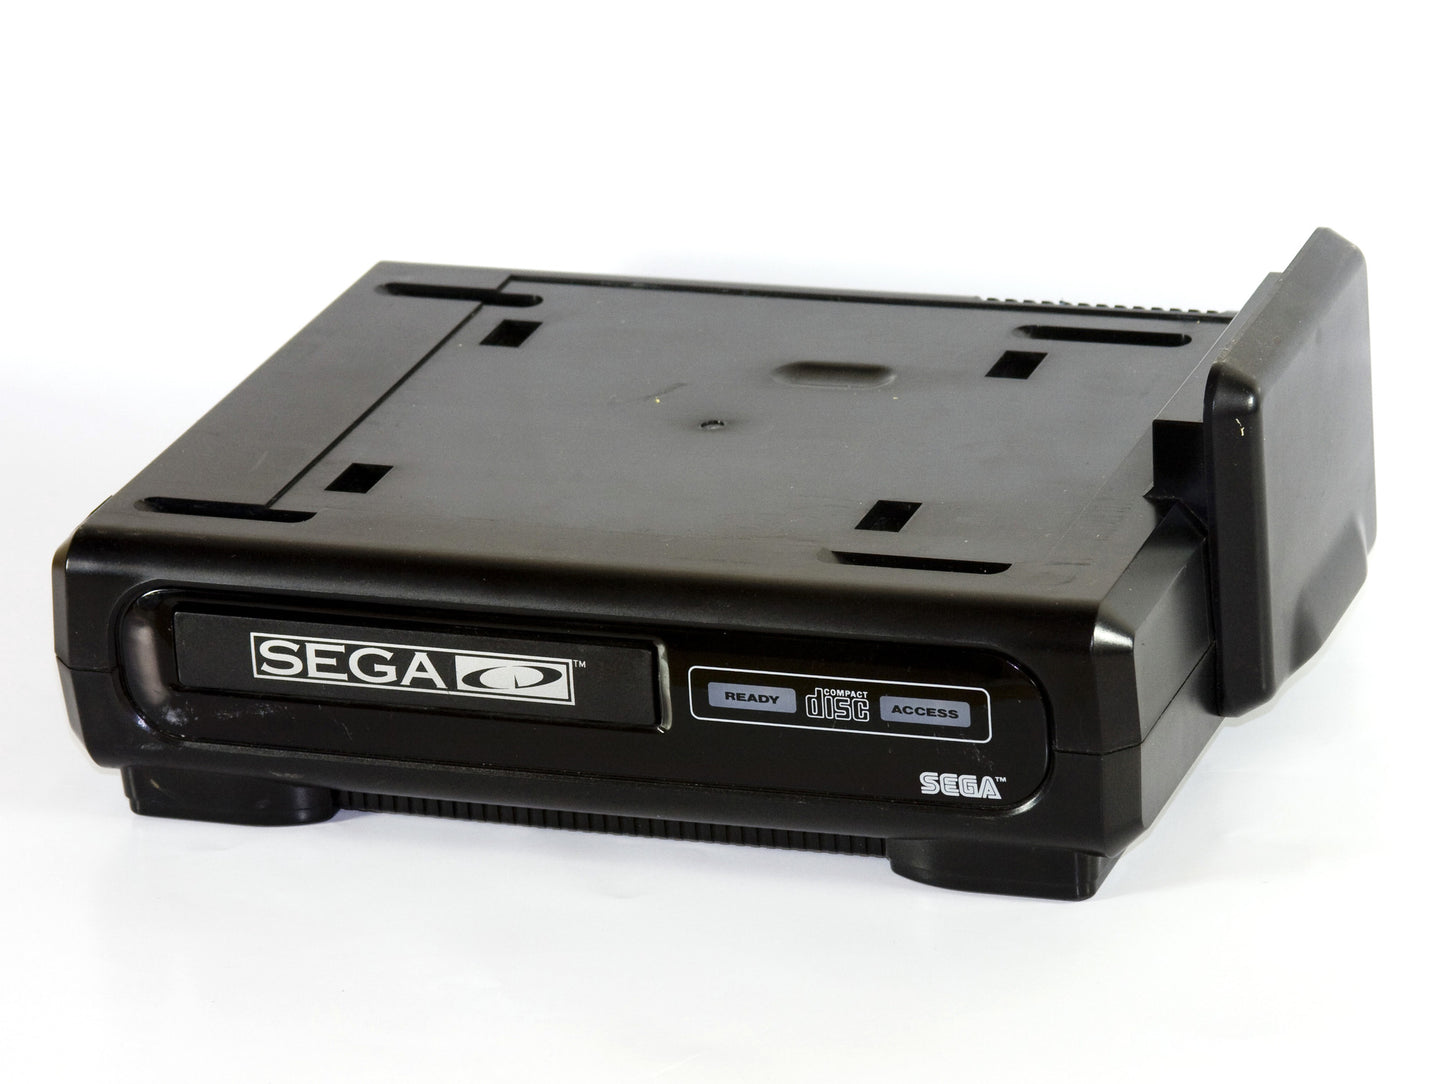 Power Supply for Sega Mega CD 1 & 2